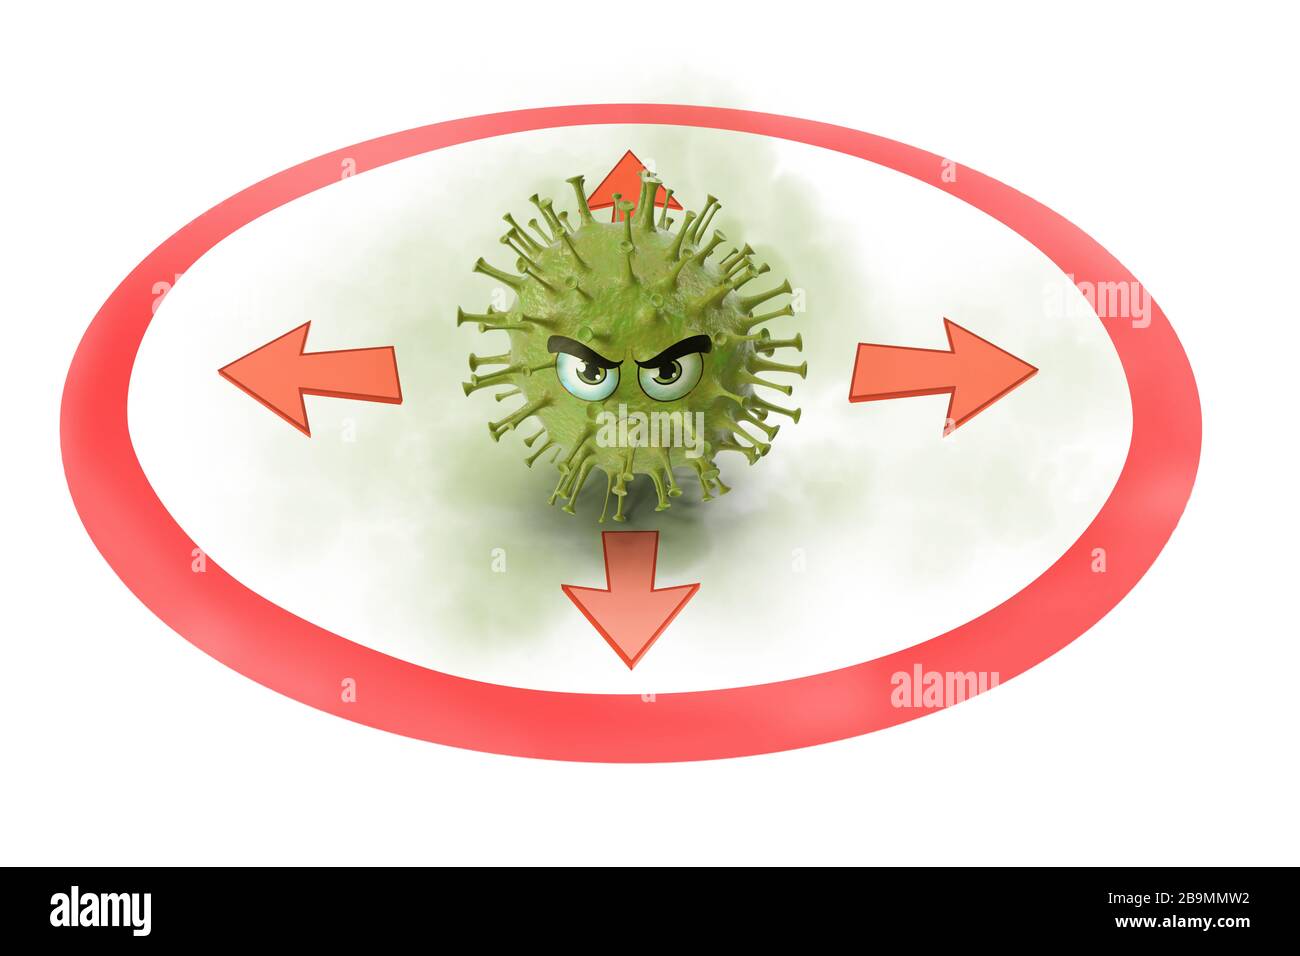 Halten Sie Abstand zum Virus, Infektionsrisiko 3D-Abbildung Stockfoto